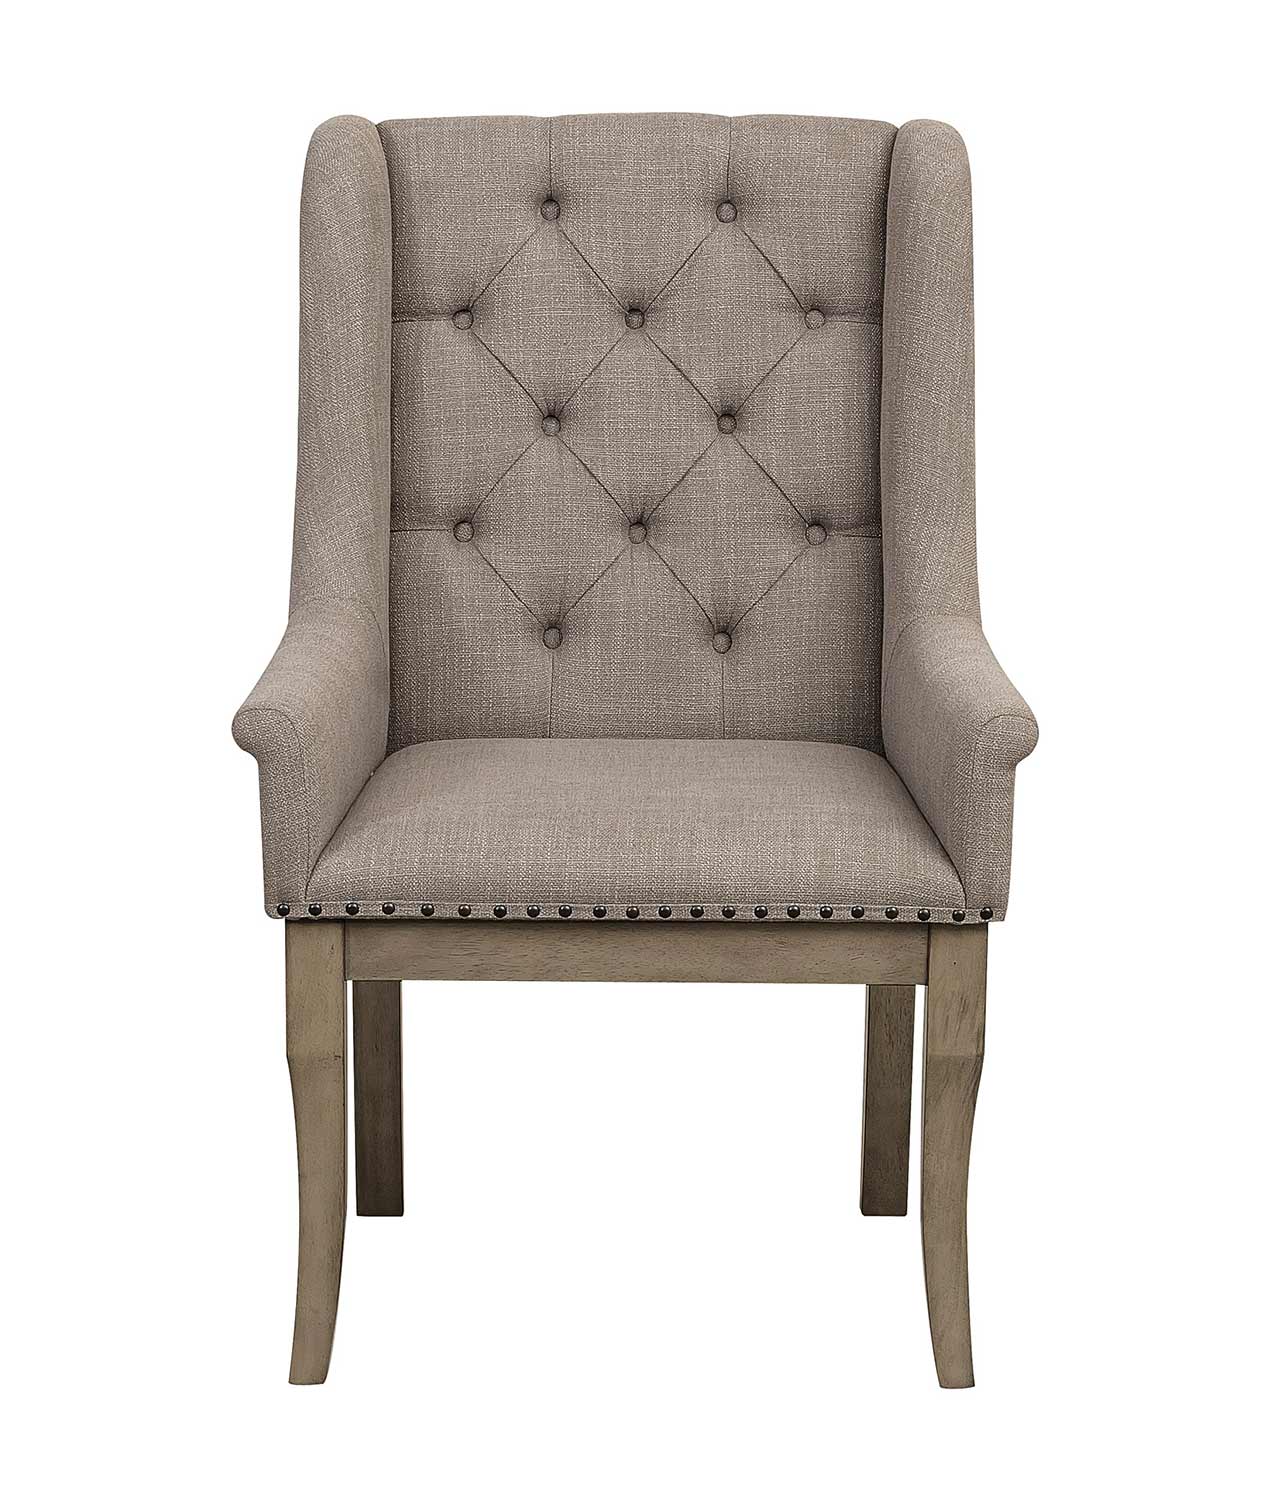 Homelegance Vermillion Arm Chair - Bisque